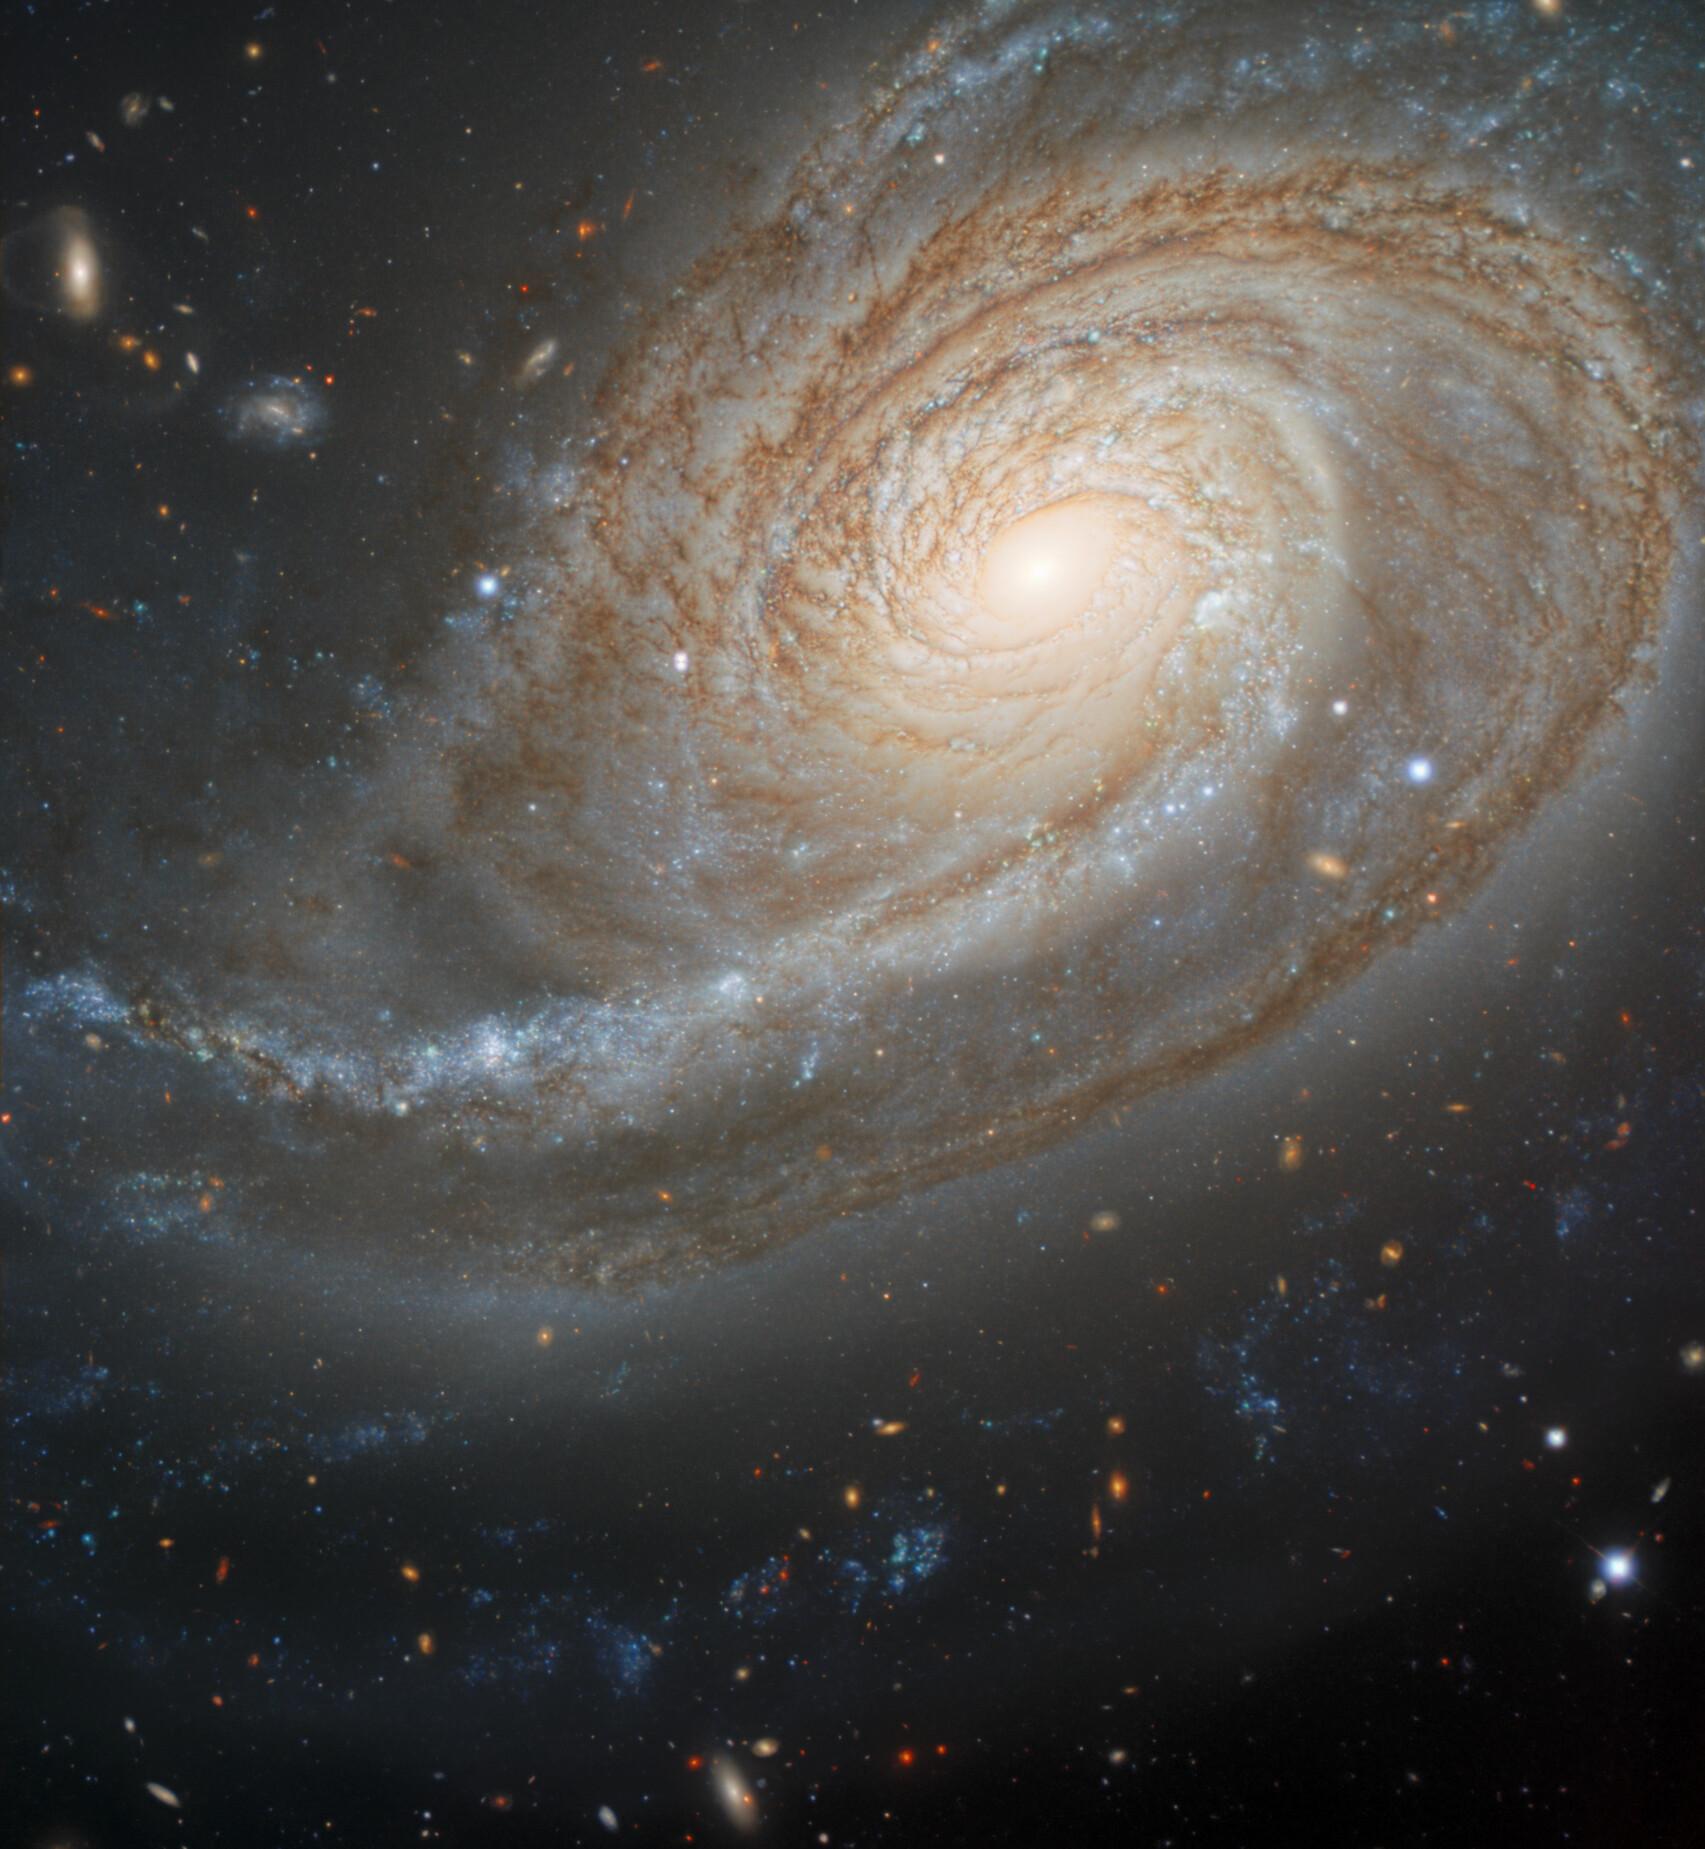 مجرّة حلزونيّة غريبة الشكل حيث يمادّ أحد أذرعها بصورة كبيرة، تظهر بنواة صفراء وممرات غبار وعناقيد نجوم زرقاء، وتظهر مجرّات قصيّة في خلفية الصورة